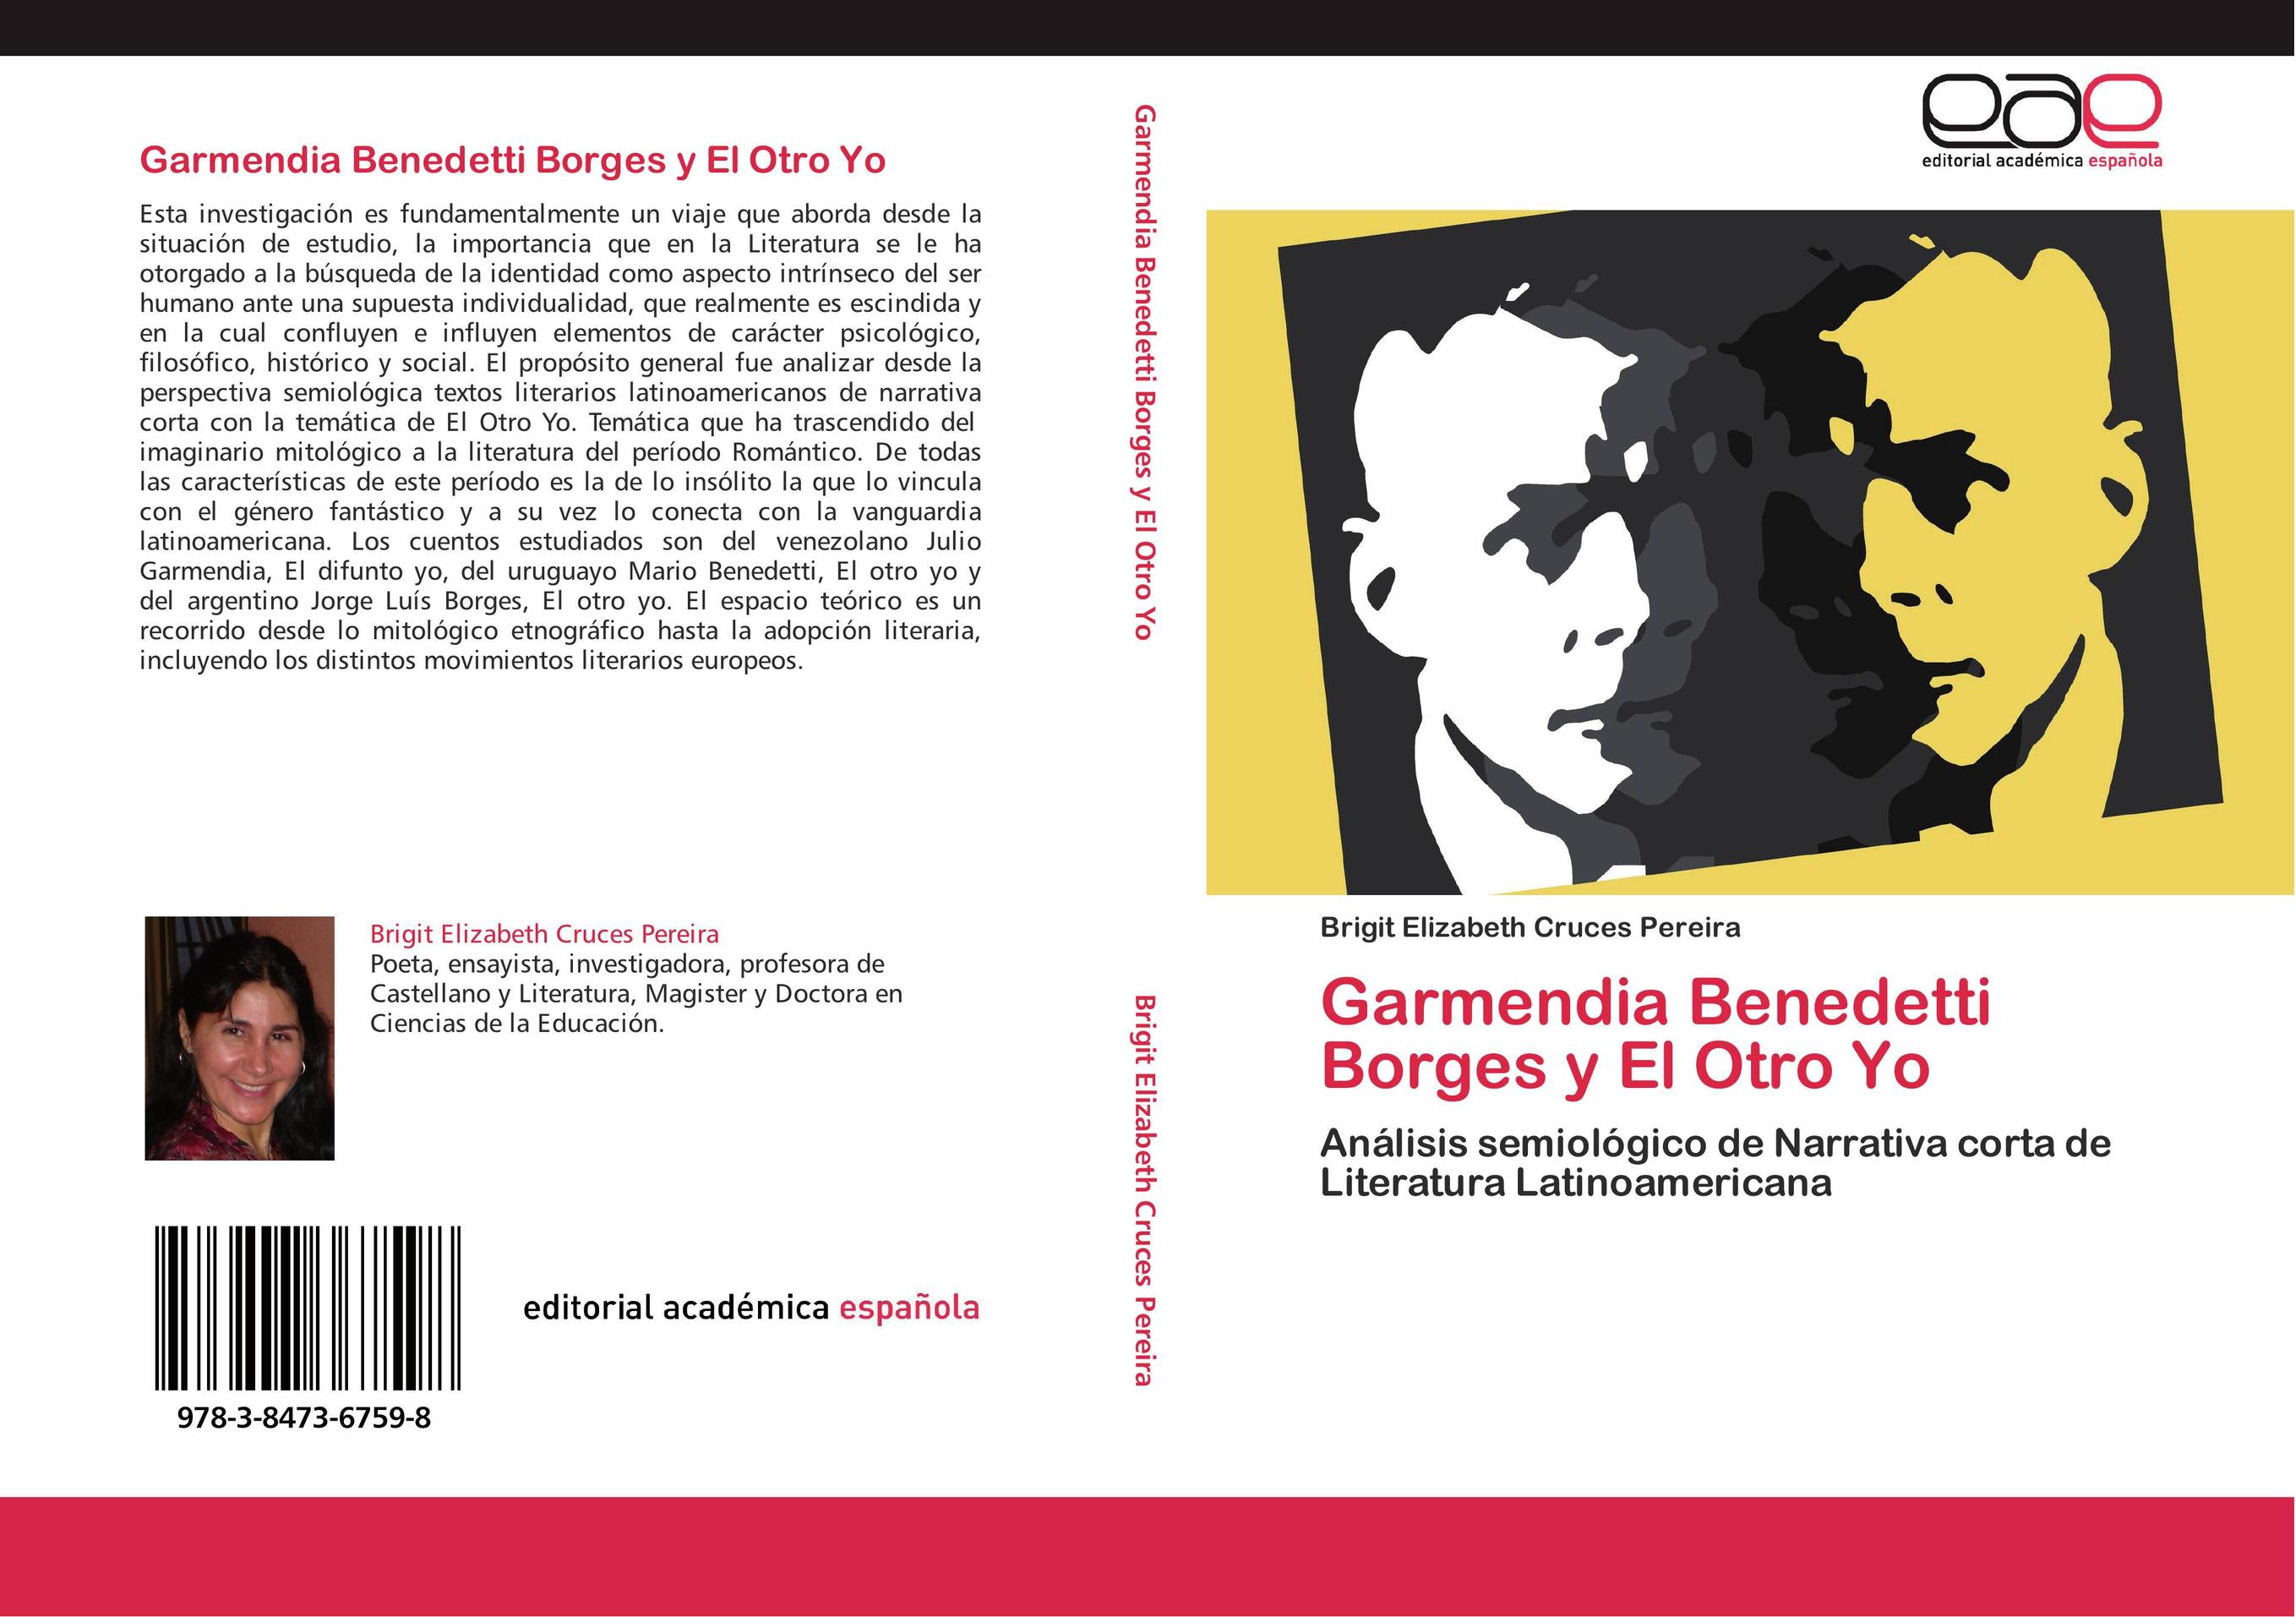 Garmendia Benedetti Borges y El Otro Yo